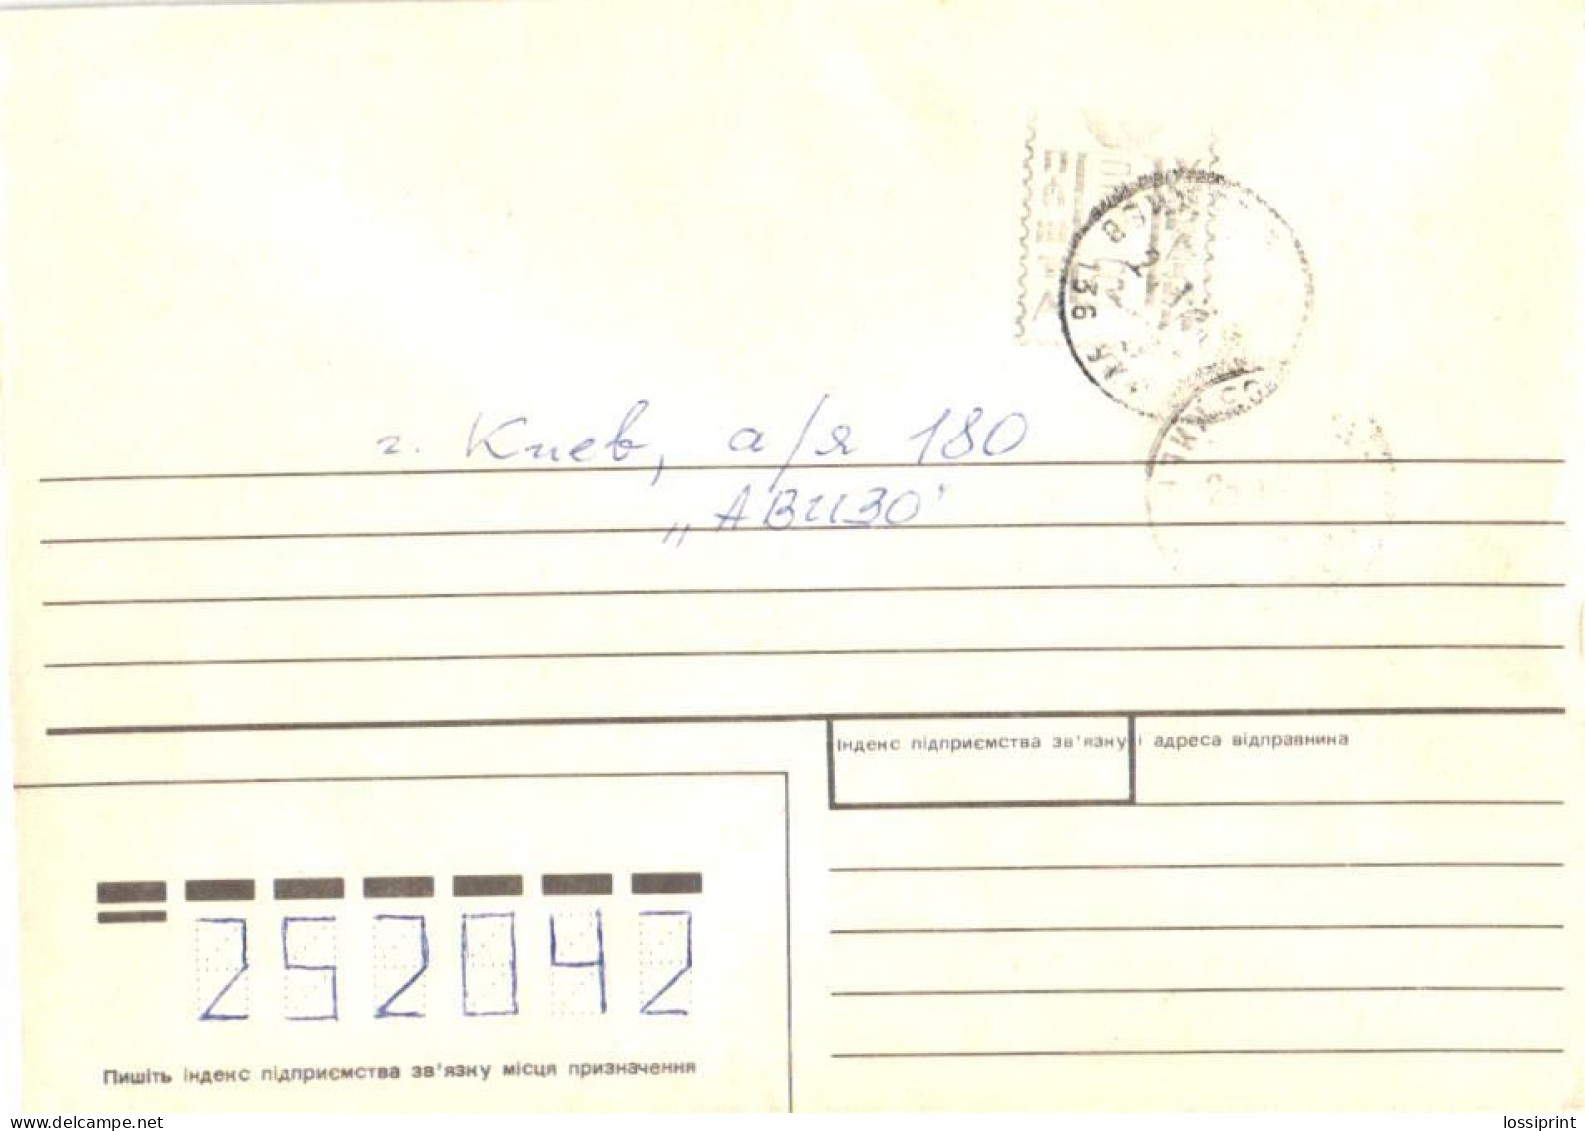 Ukraine:Ukraina:Stamp Cancellation Under Kiev Stamp, 1993 - Ucrania